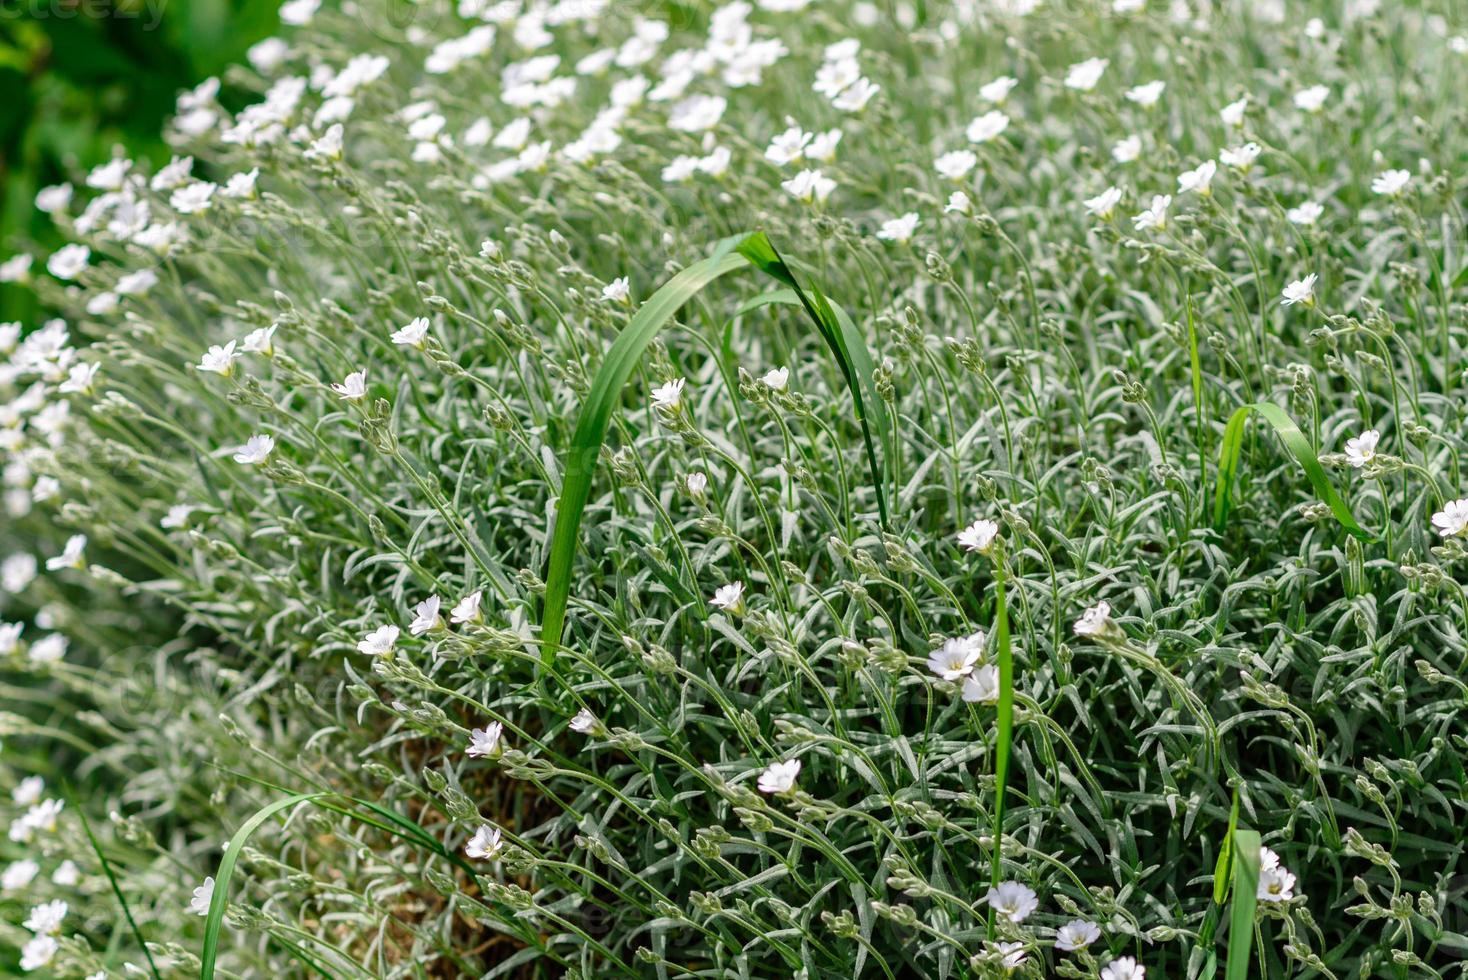 hermosas flores blancas en el contexto de las plantas verdes. fondo de verano foto